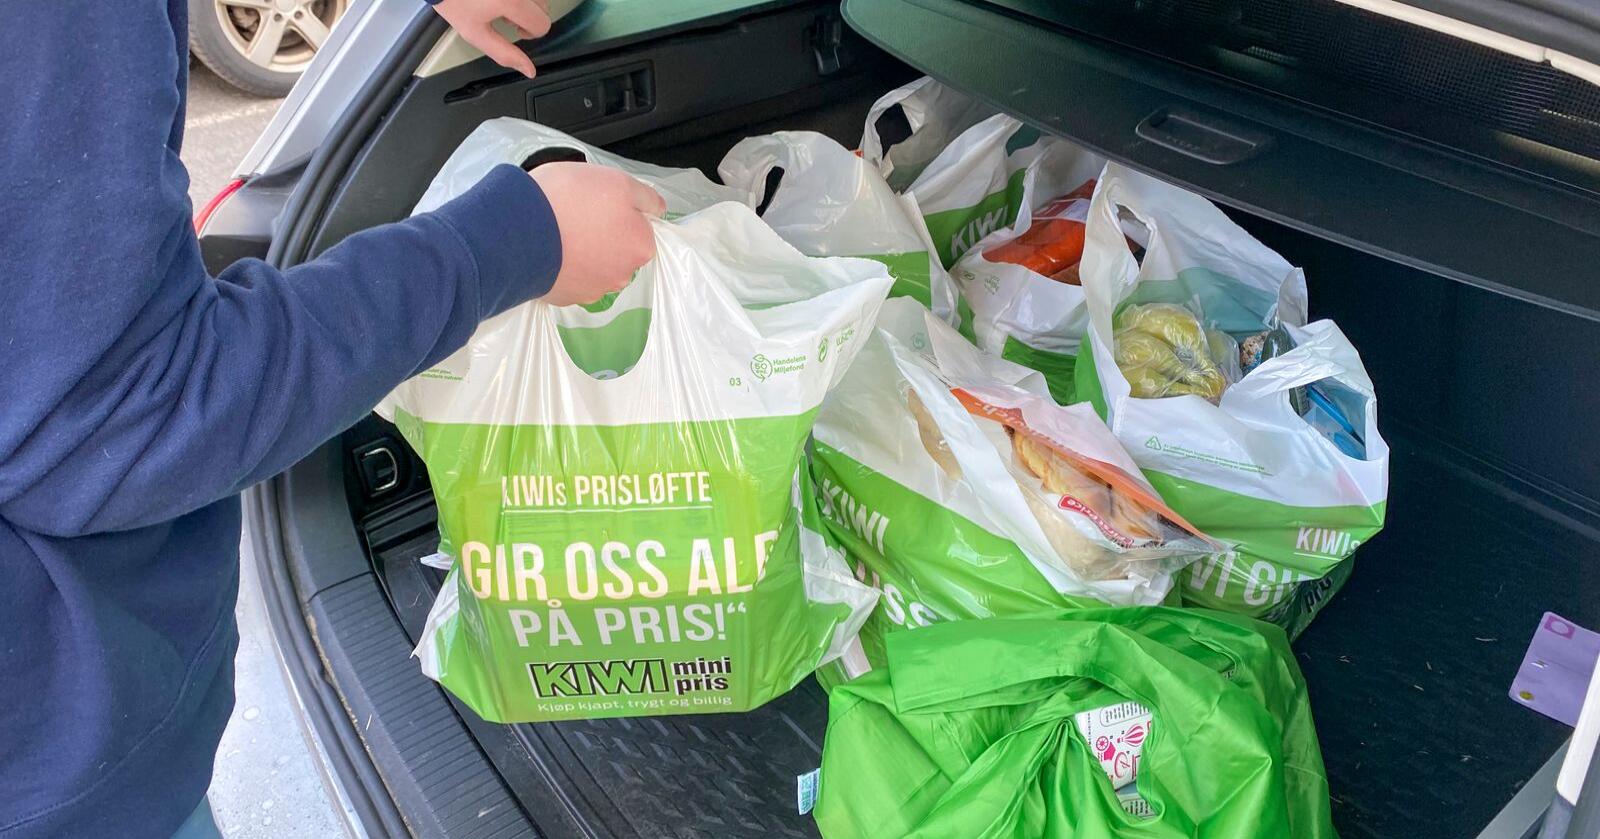 Dagligvarekjedene er ikke enige om hvordan matprisene utvikler seg. Norgesgruppen tror handleposene blir dyrere.  Foto: Erik Johansen / NTB scanpix